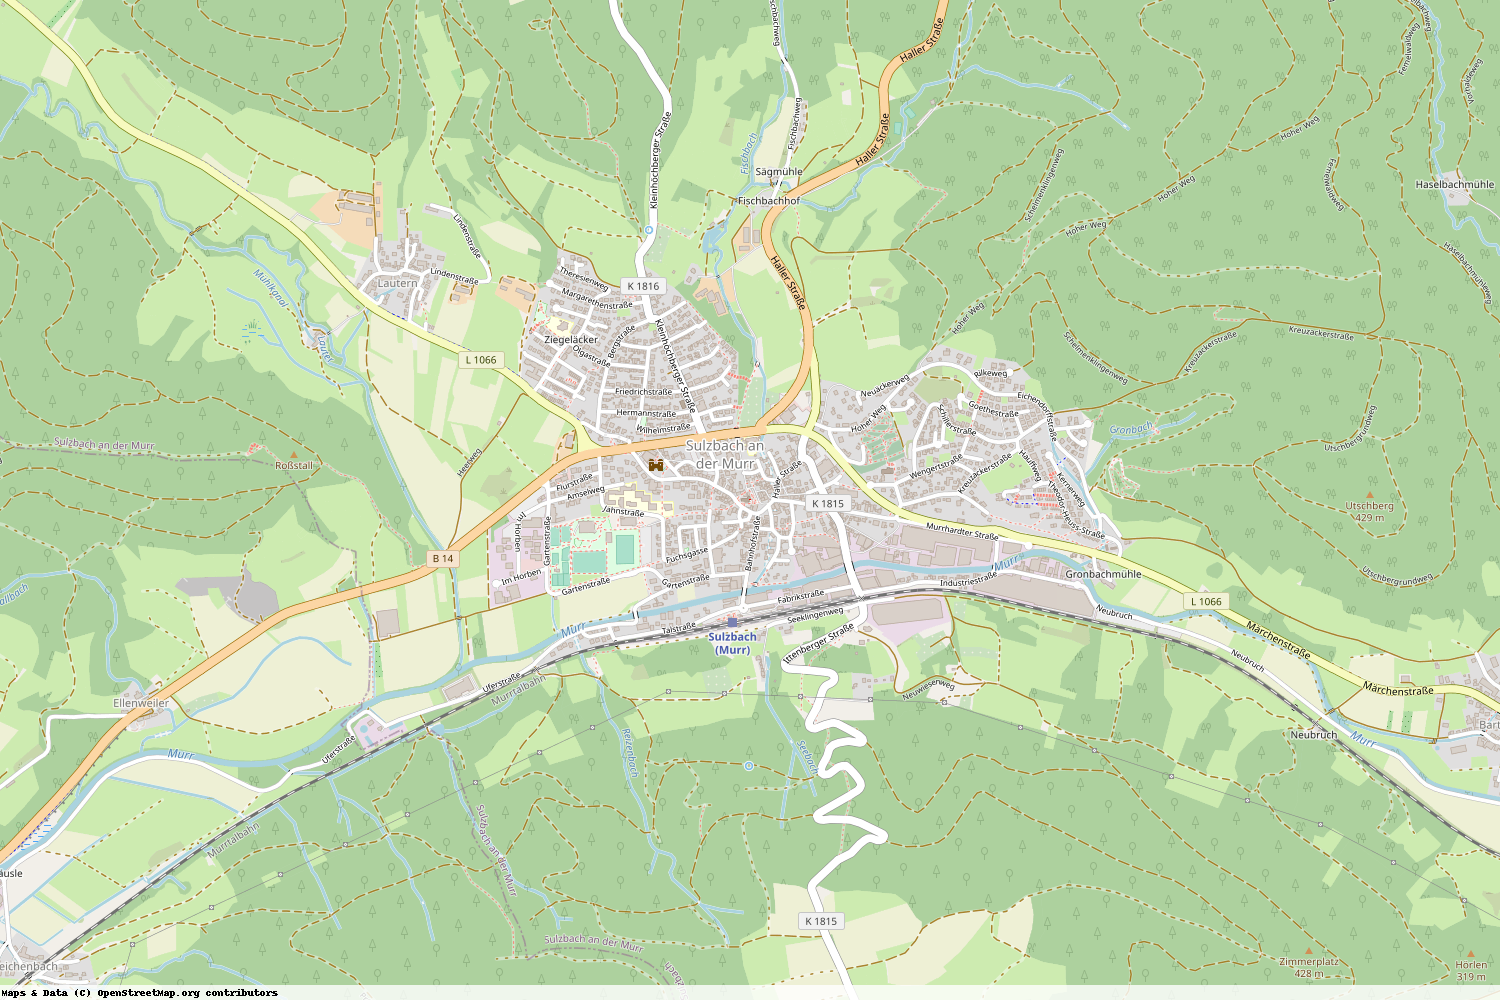 Ist gerade Stromausfall in Baden-Württemberg - Rems-Murr-Kreis - Sulzbach an der Murr?